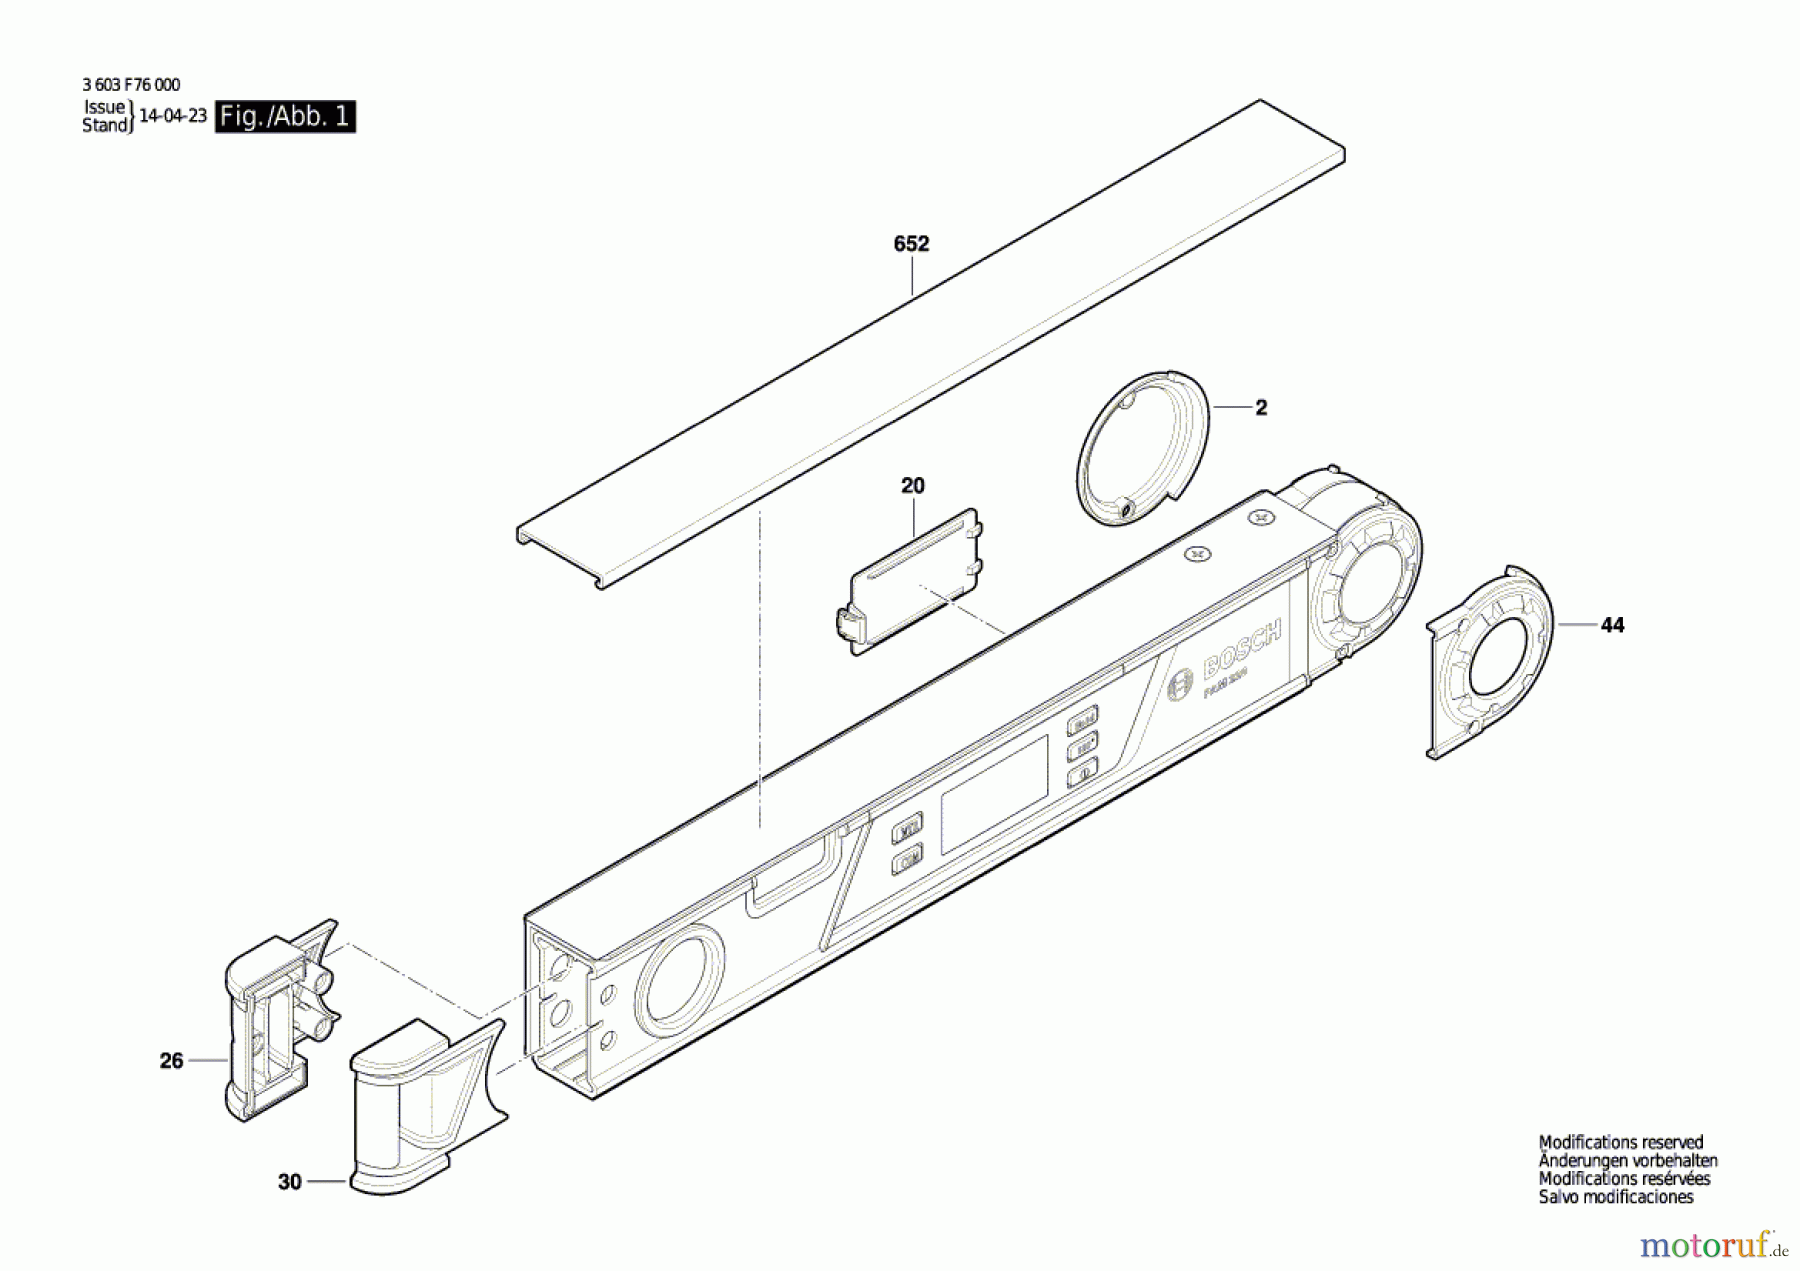  Bosch Werkzeug Winkelmesser PAM 220 Seite 1